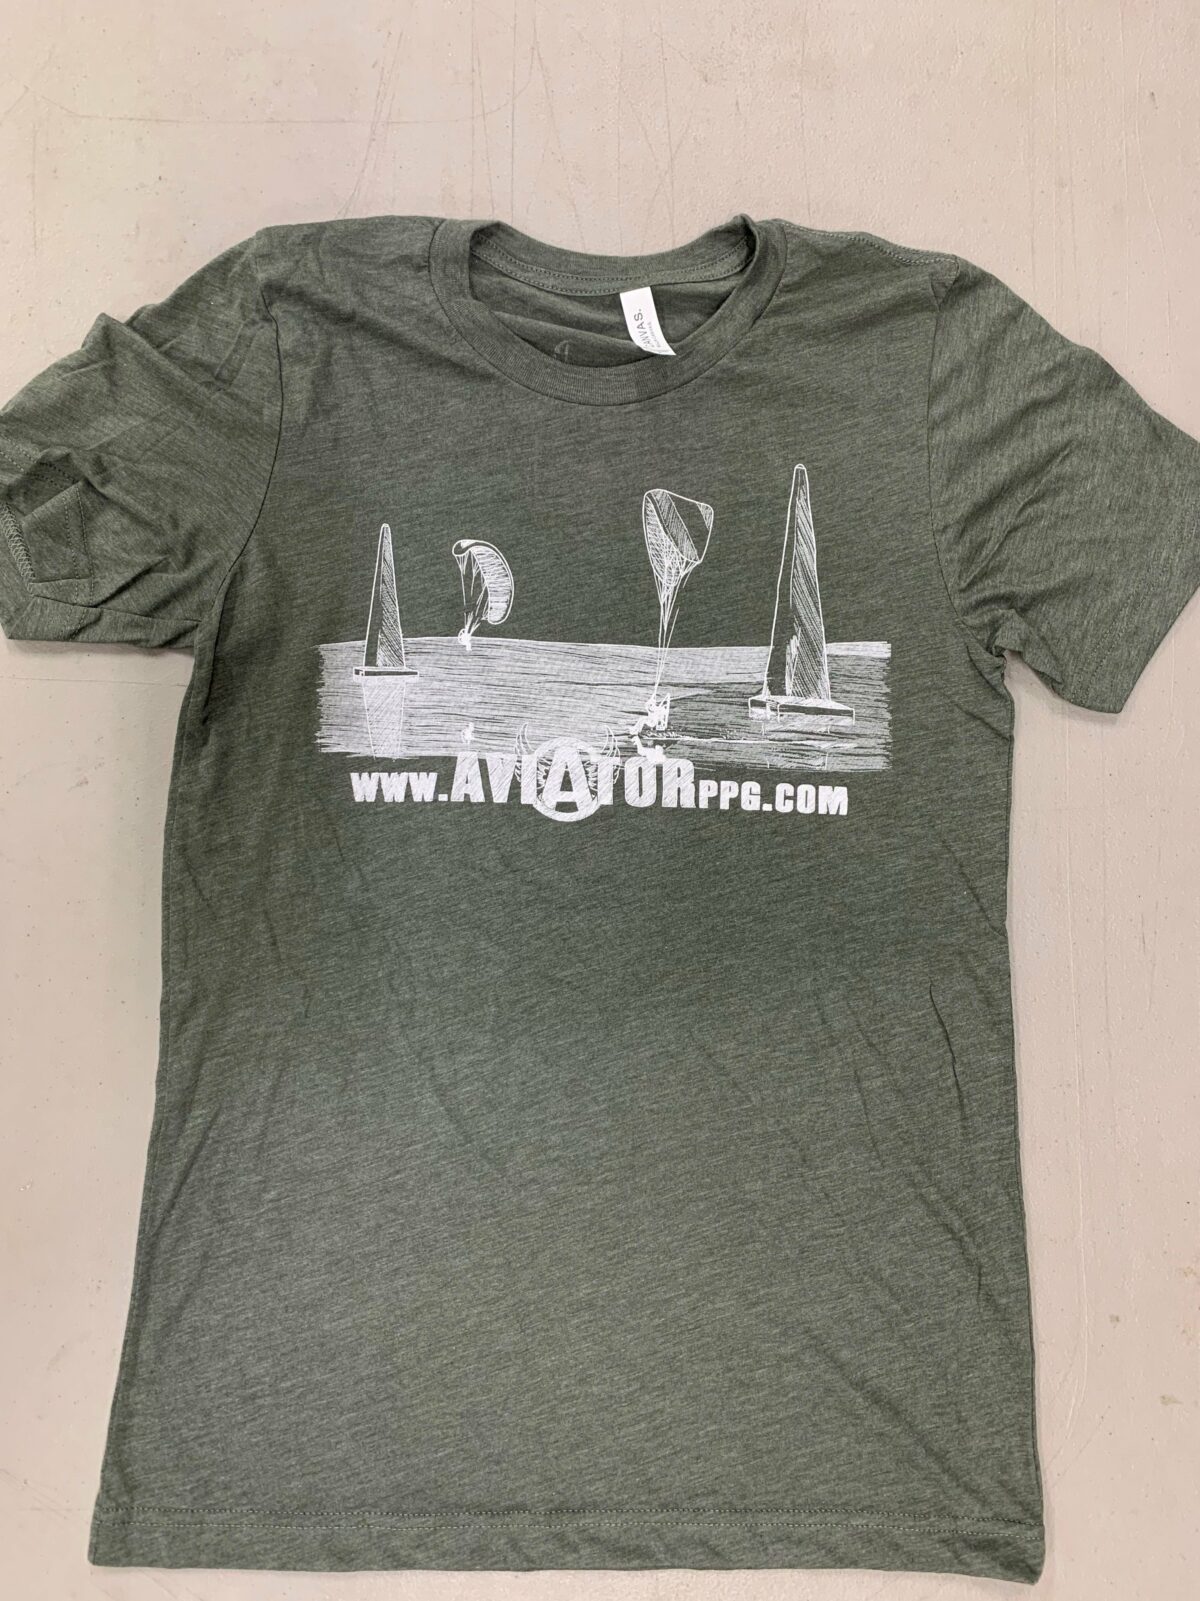 AviatorPPG.com Pylon T-Shirt